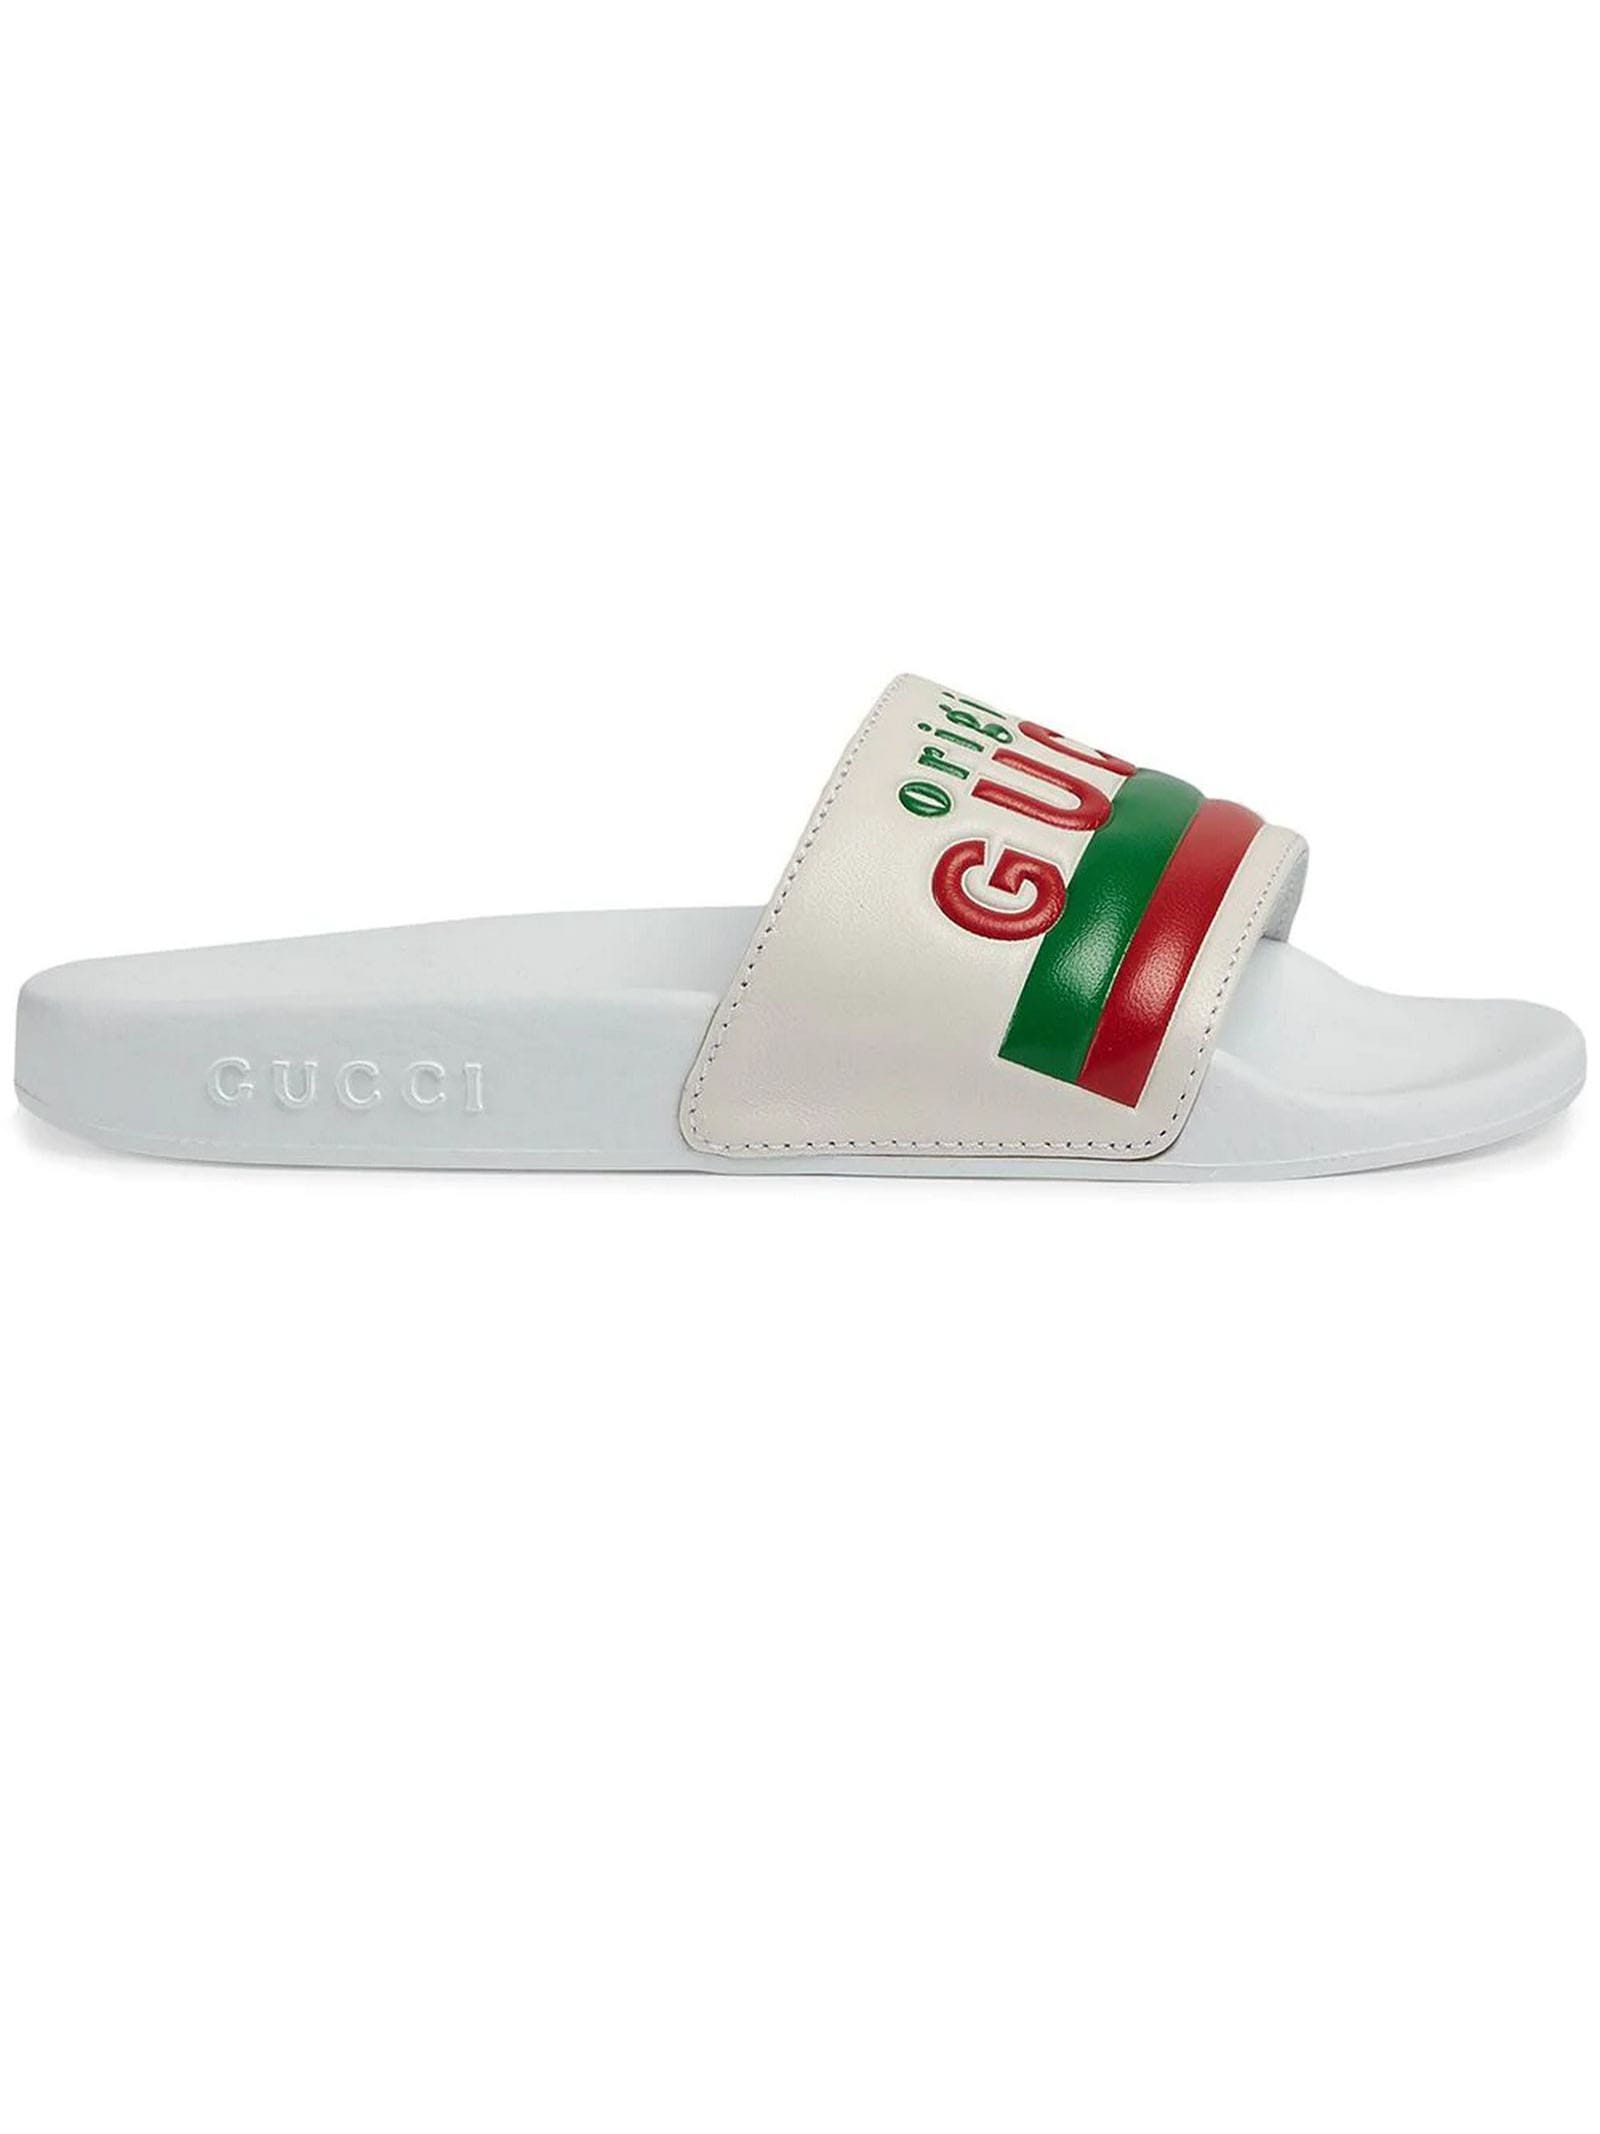 Childrens original Gucci Slide Sandal